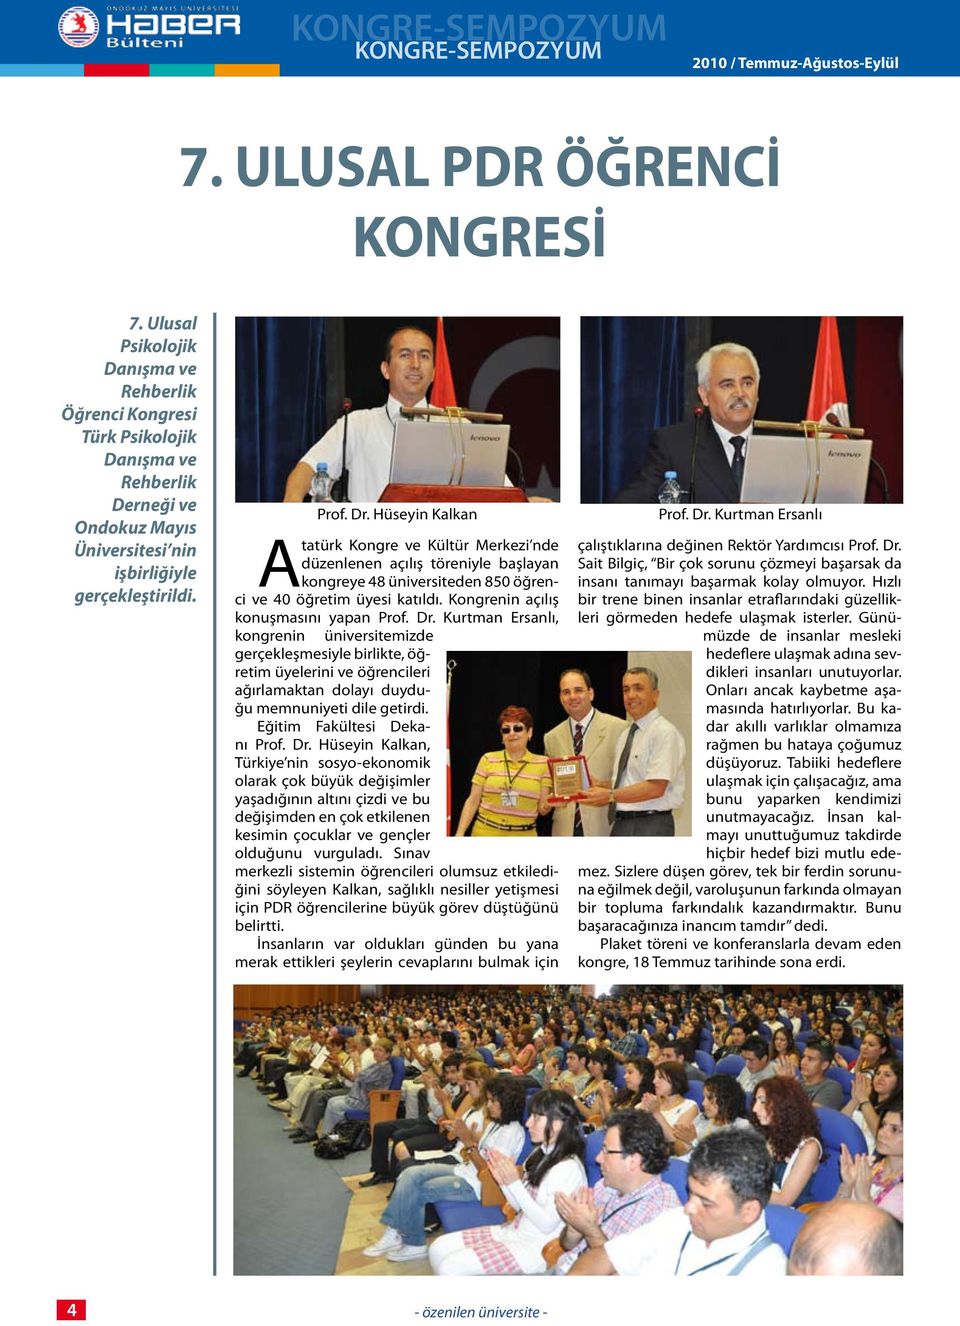 Atatürk Kongre ve Kültür Merkezi nde düzenlenen açılış töreniyle başlayan kongreye 48 üniversiteden 850 öğrenci ve 40 öğretim üyesi katıldı. Kongrenin açılış konuşmasını yapan Prof. Dr.